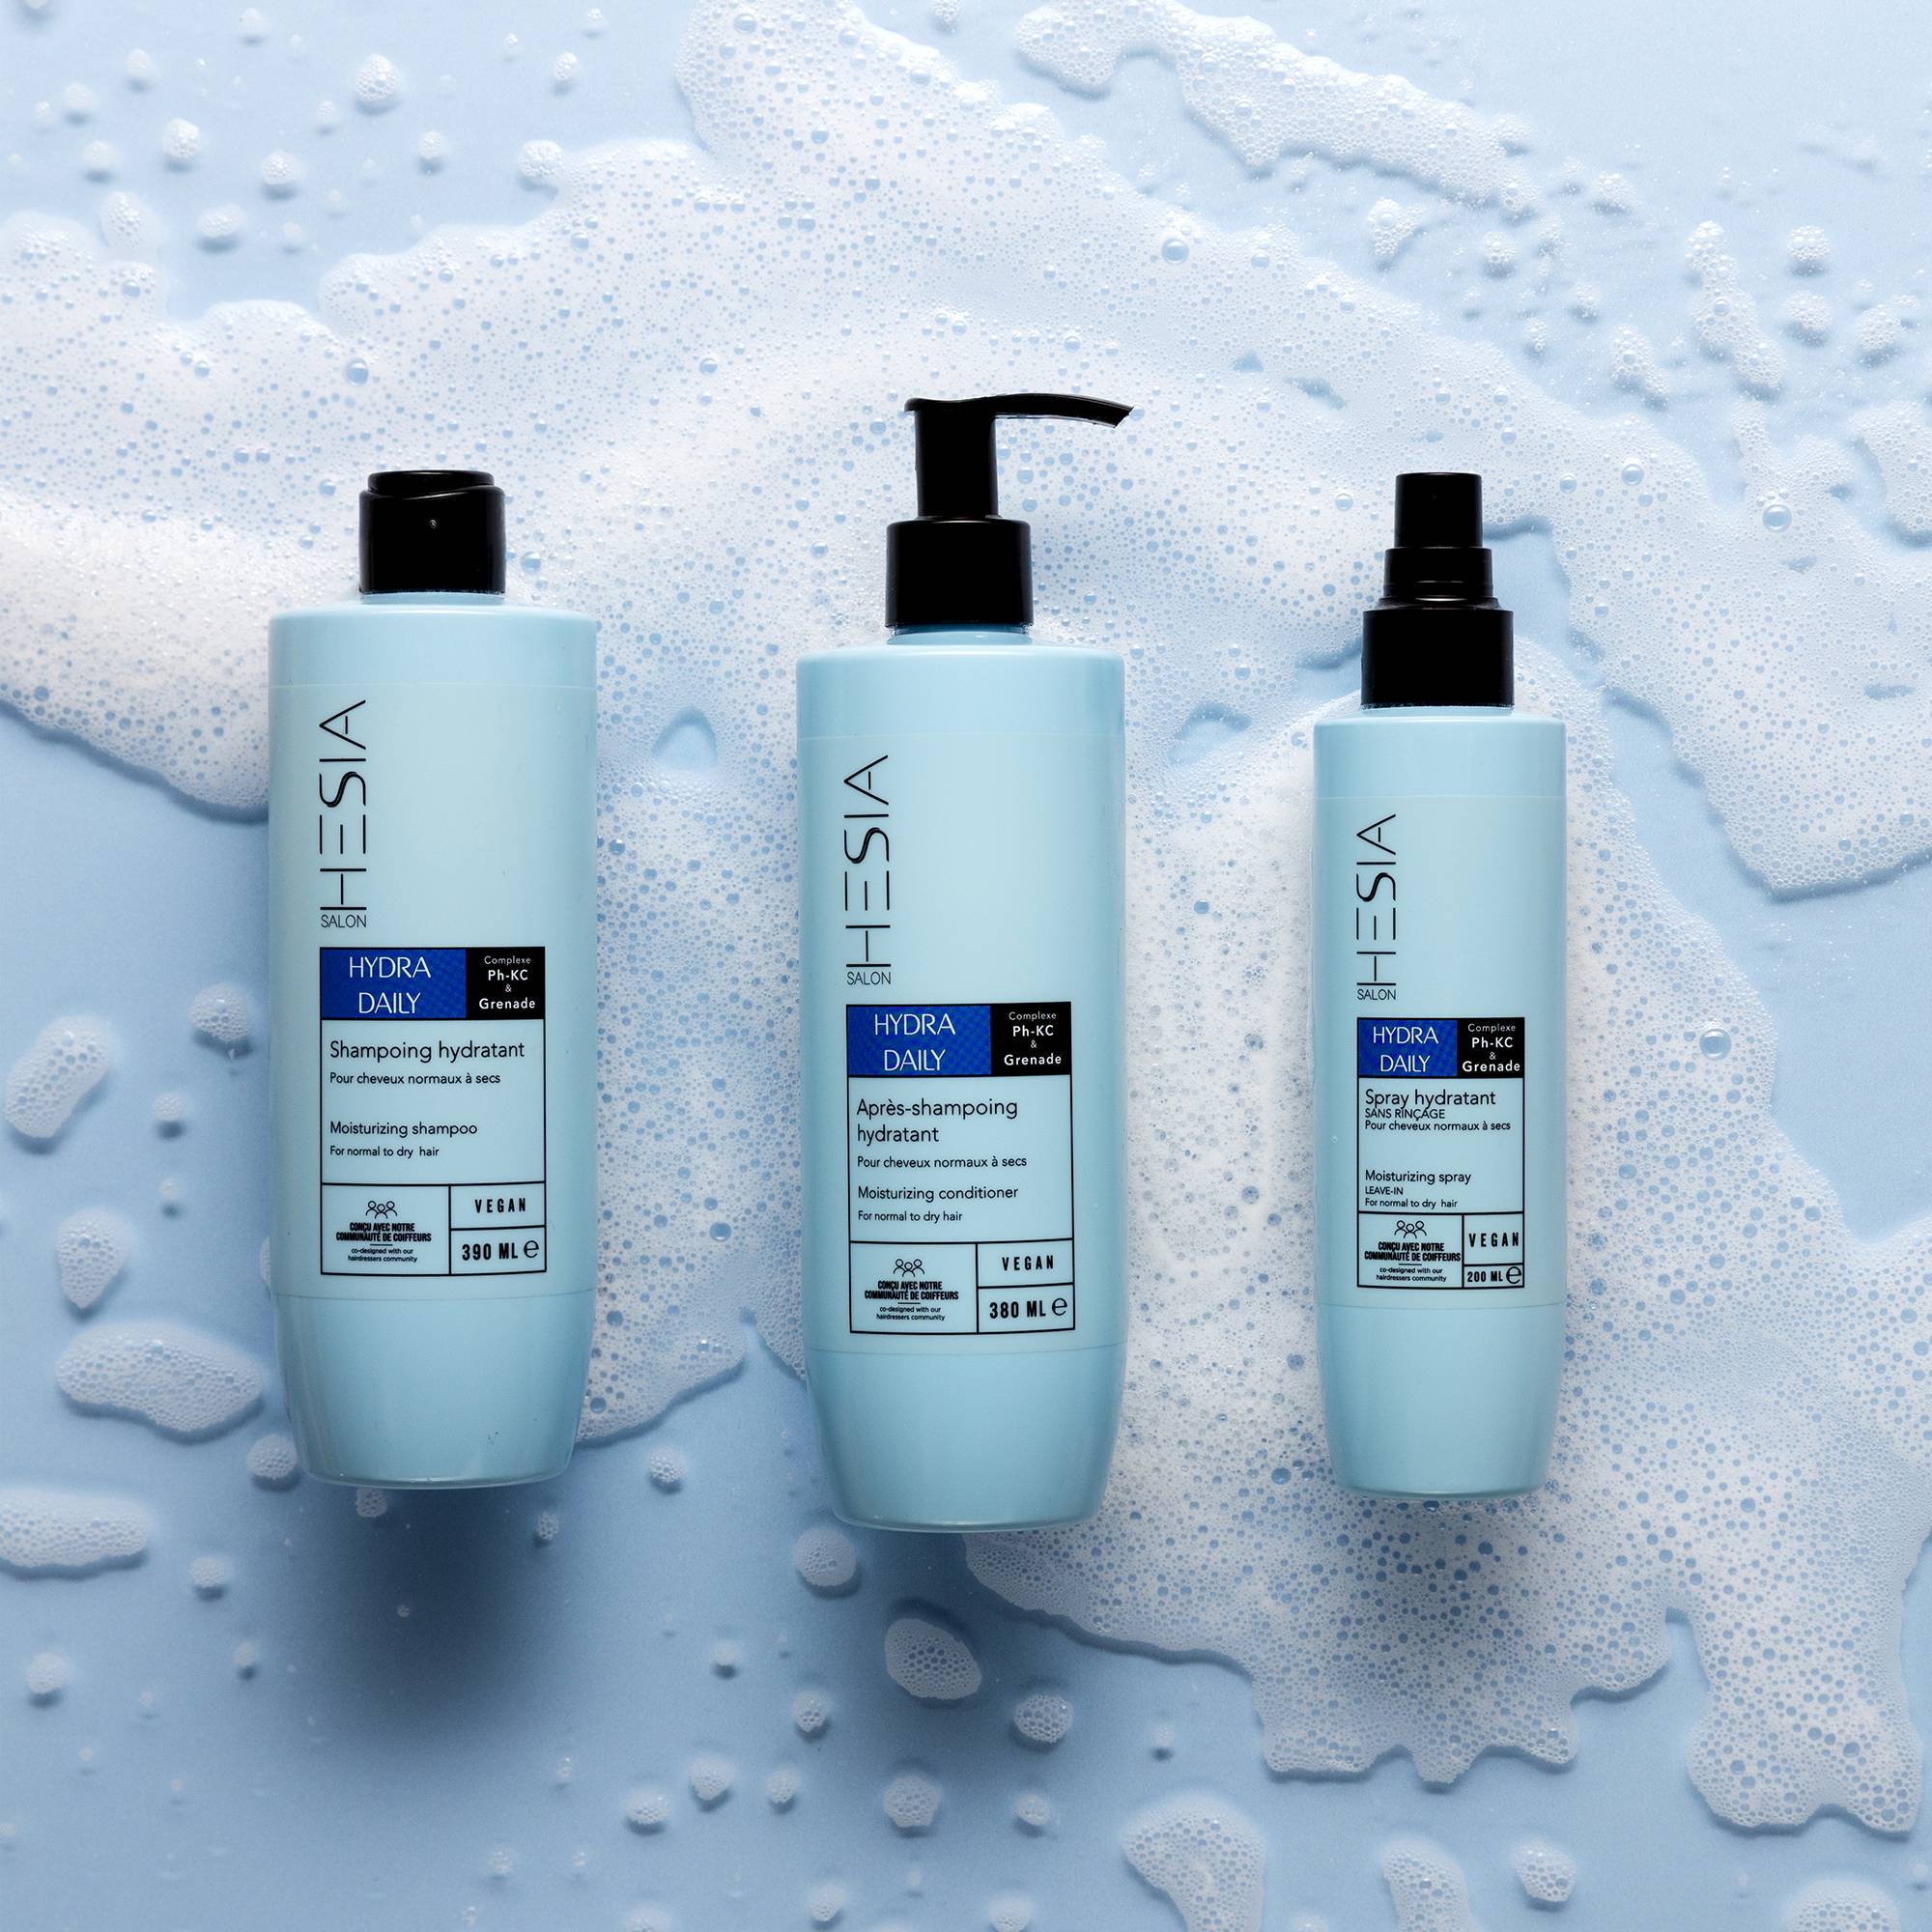 Shampoing hydratant Hydra Daily de la marque HESIA Salon Contenance 390ml - 5